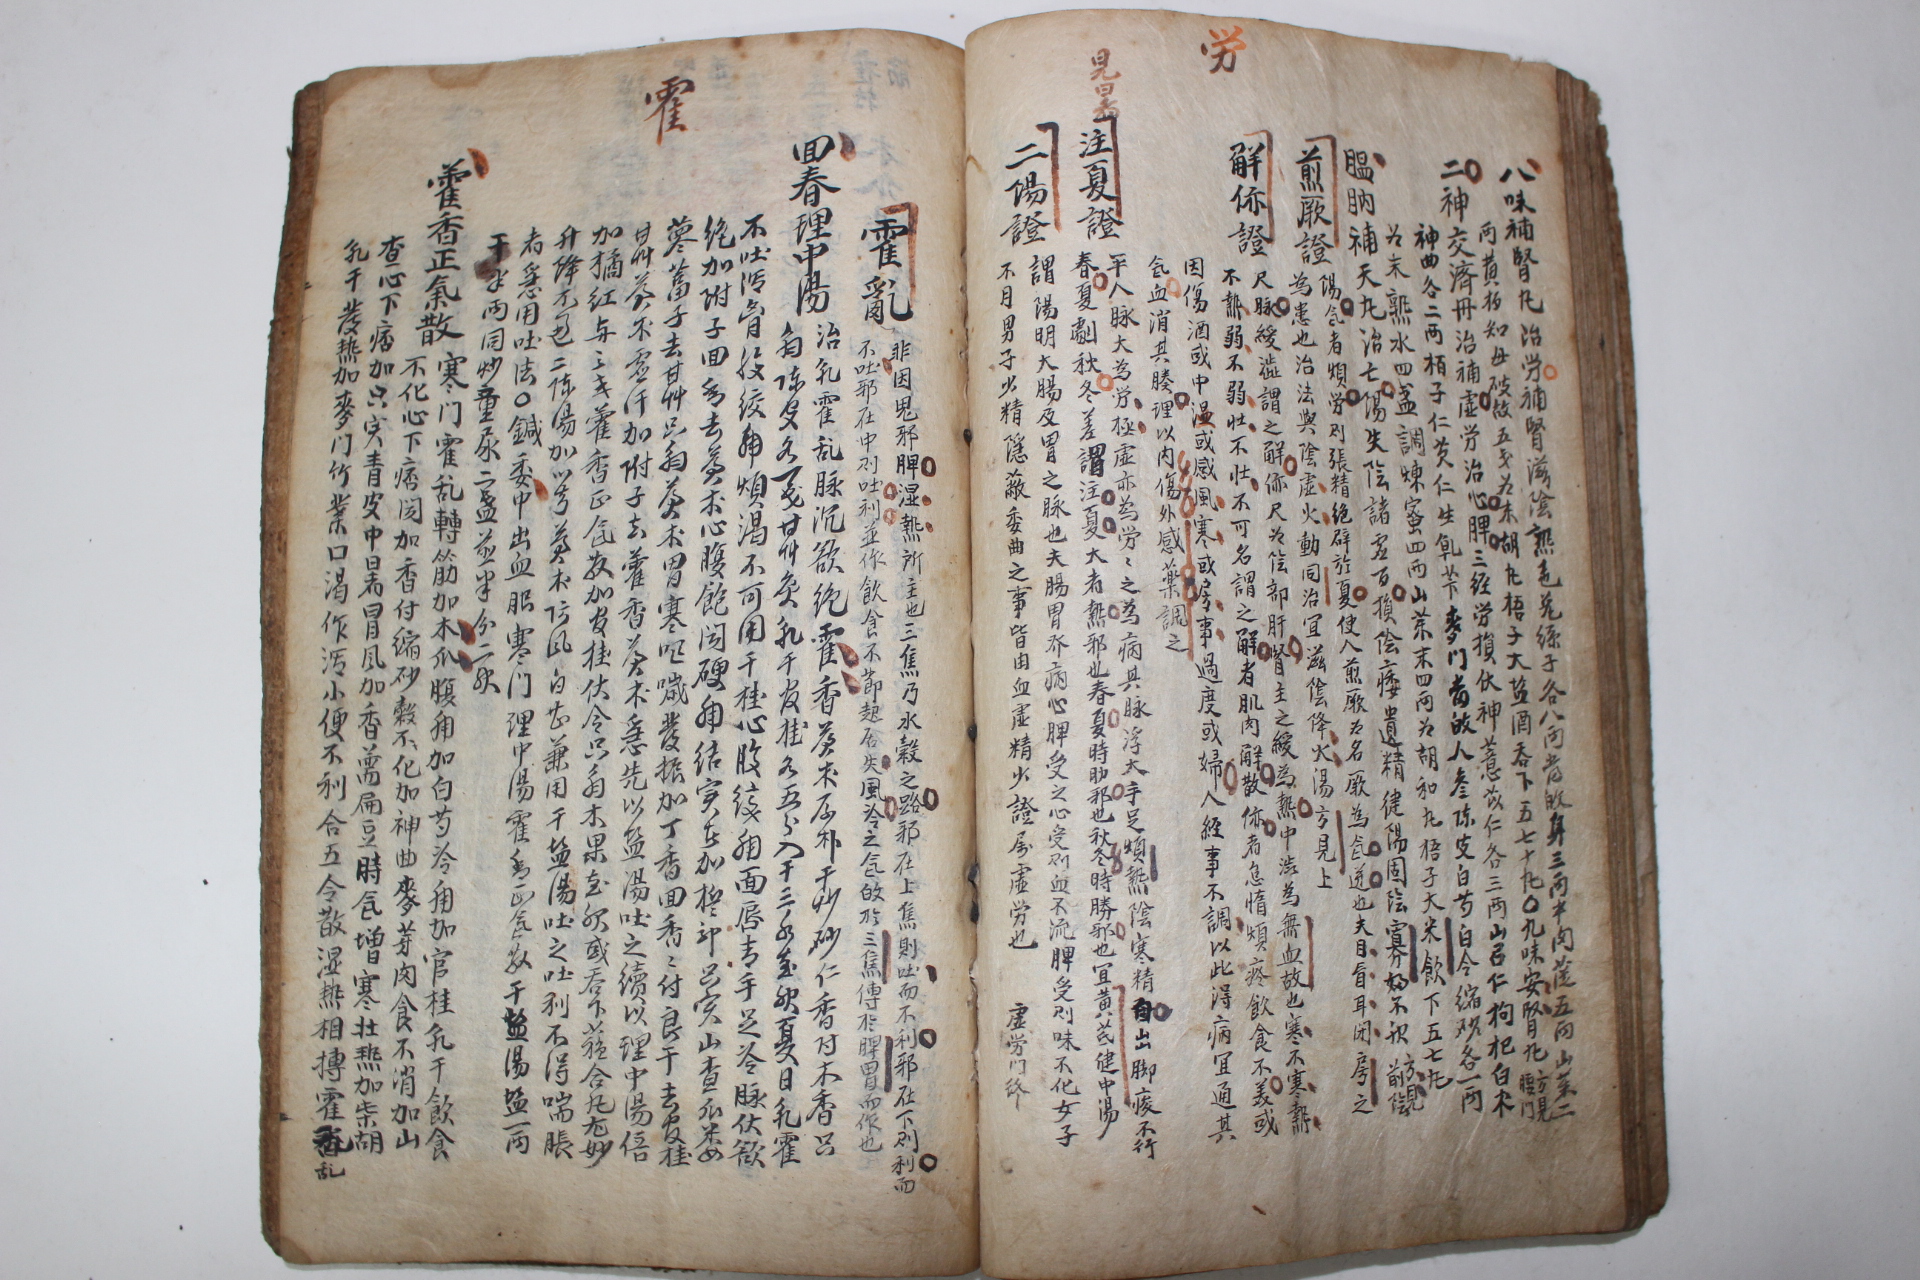 조선시대 고필사본 의서 보제신방(普濟神方)